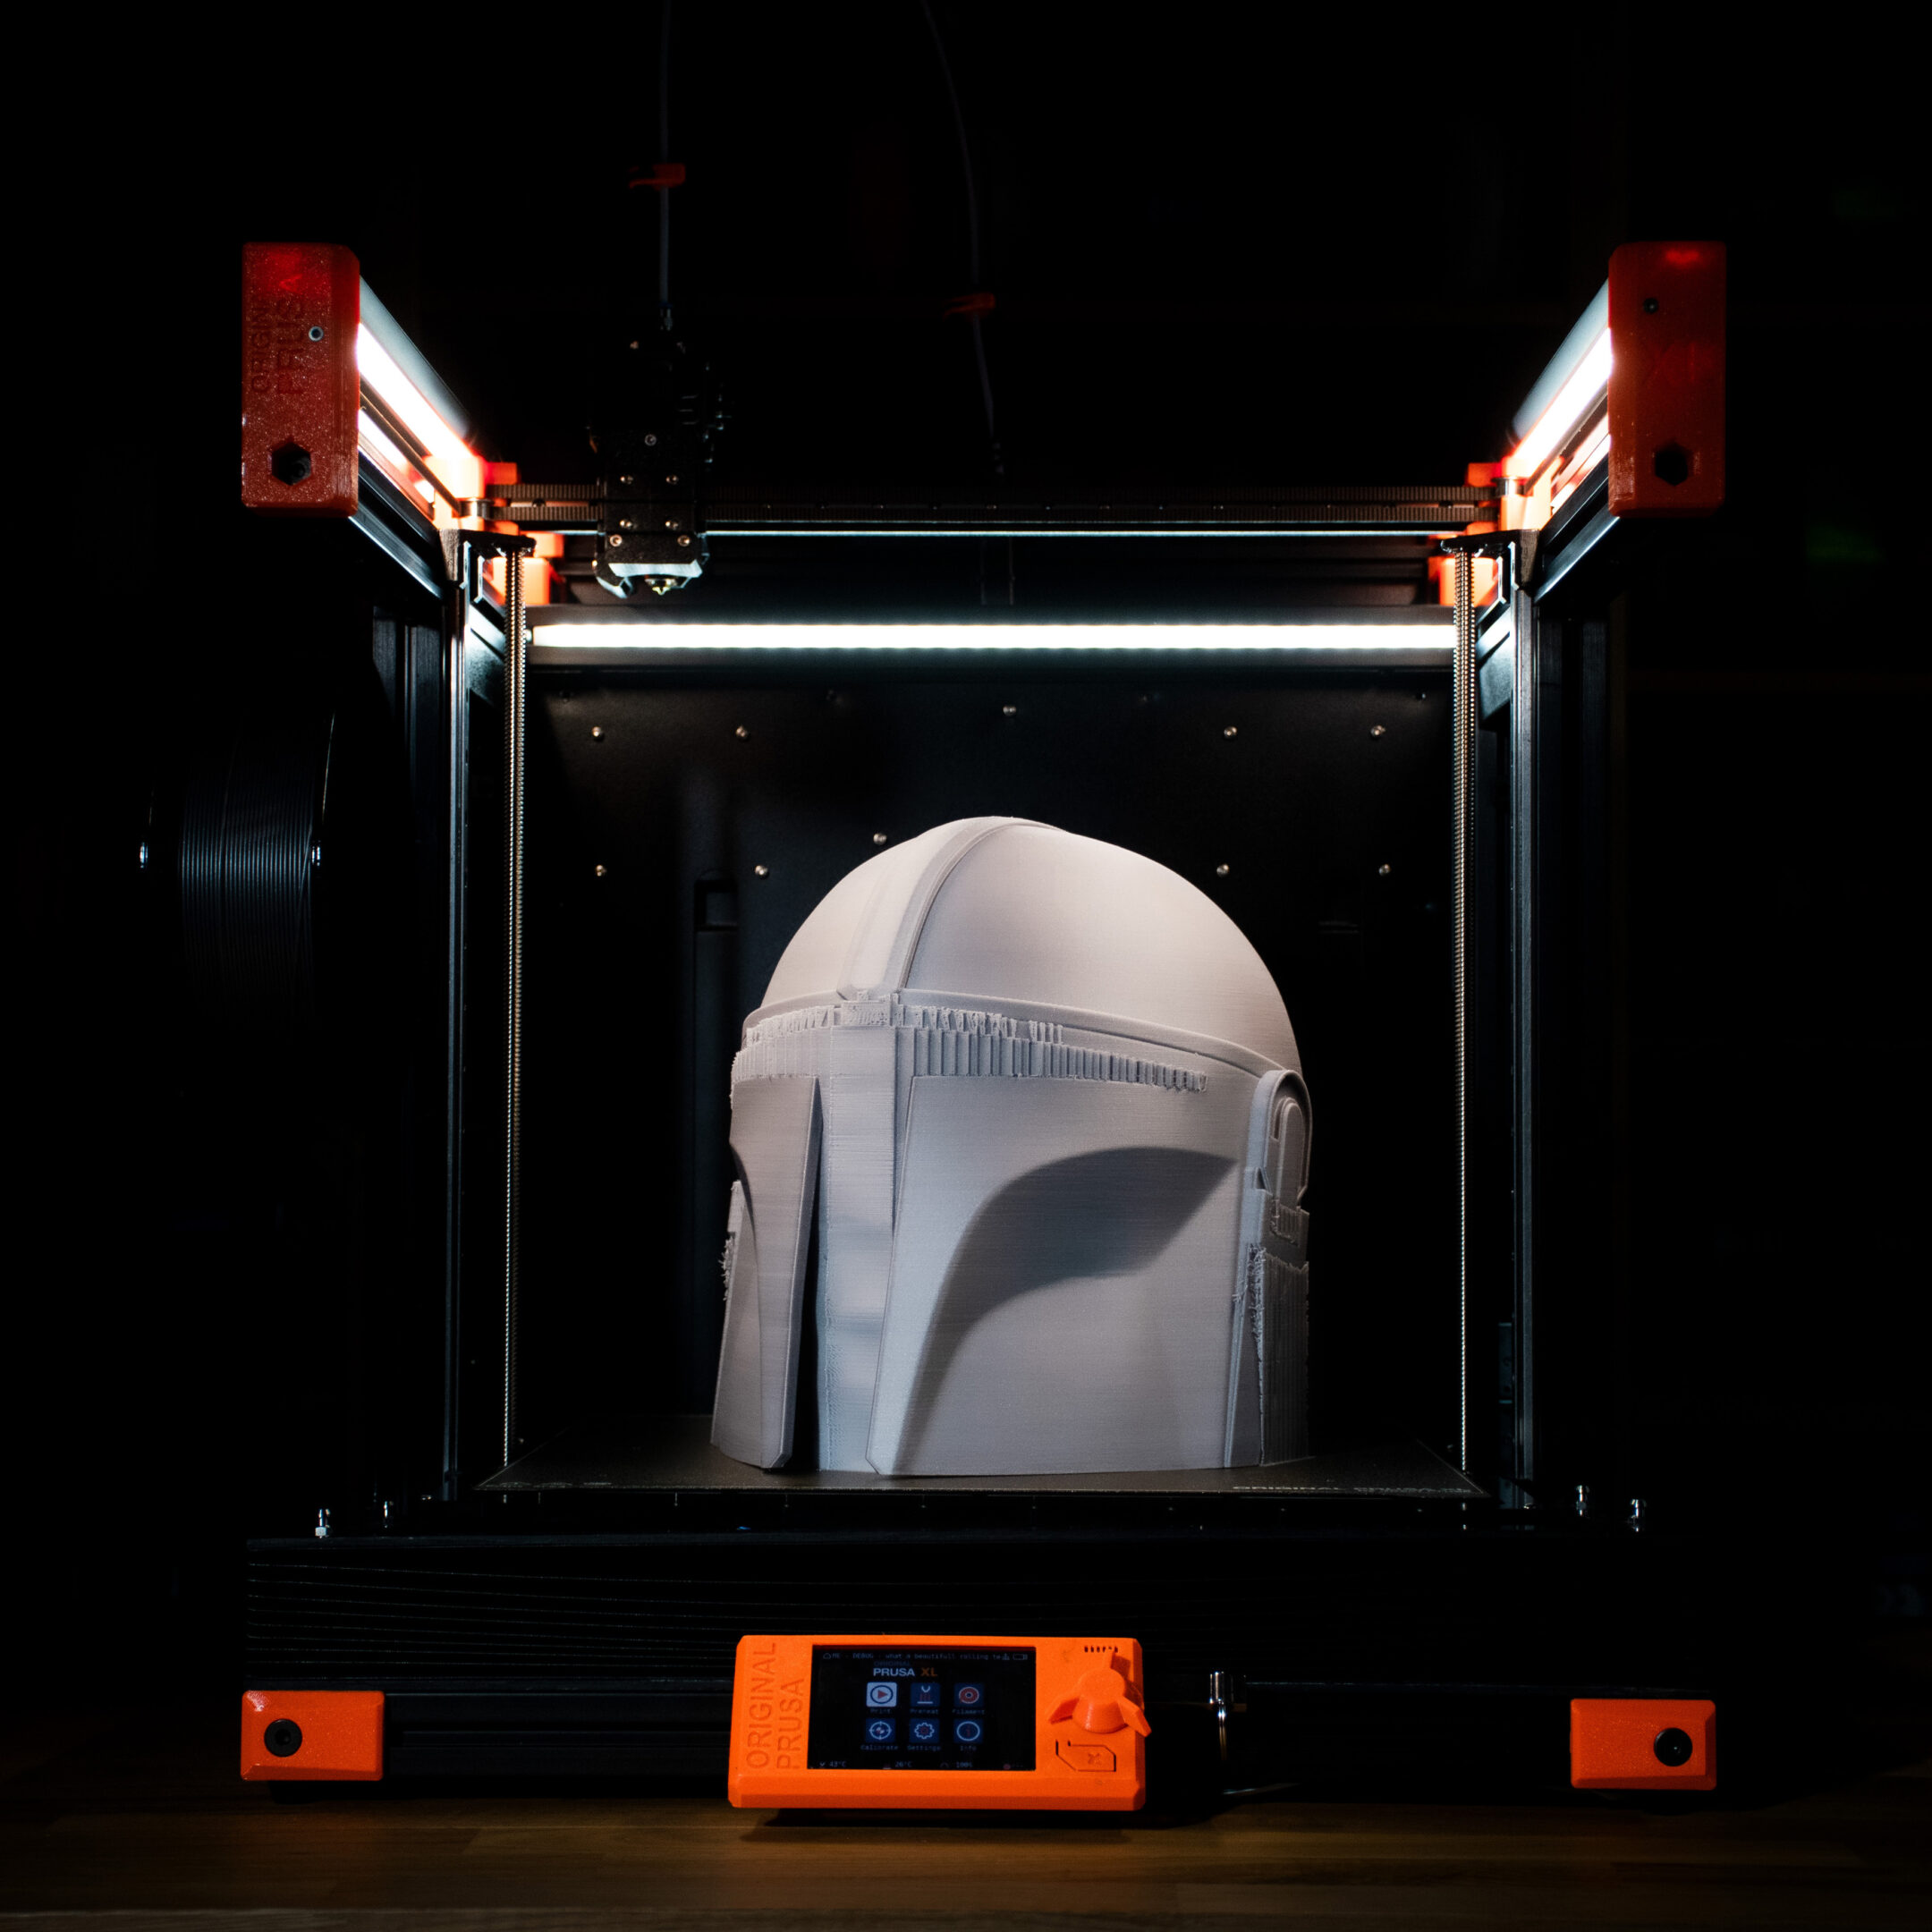 Stampante 3D, mini stampante 3D con stampa ad alta precisione